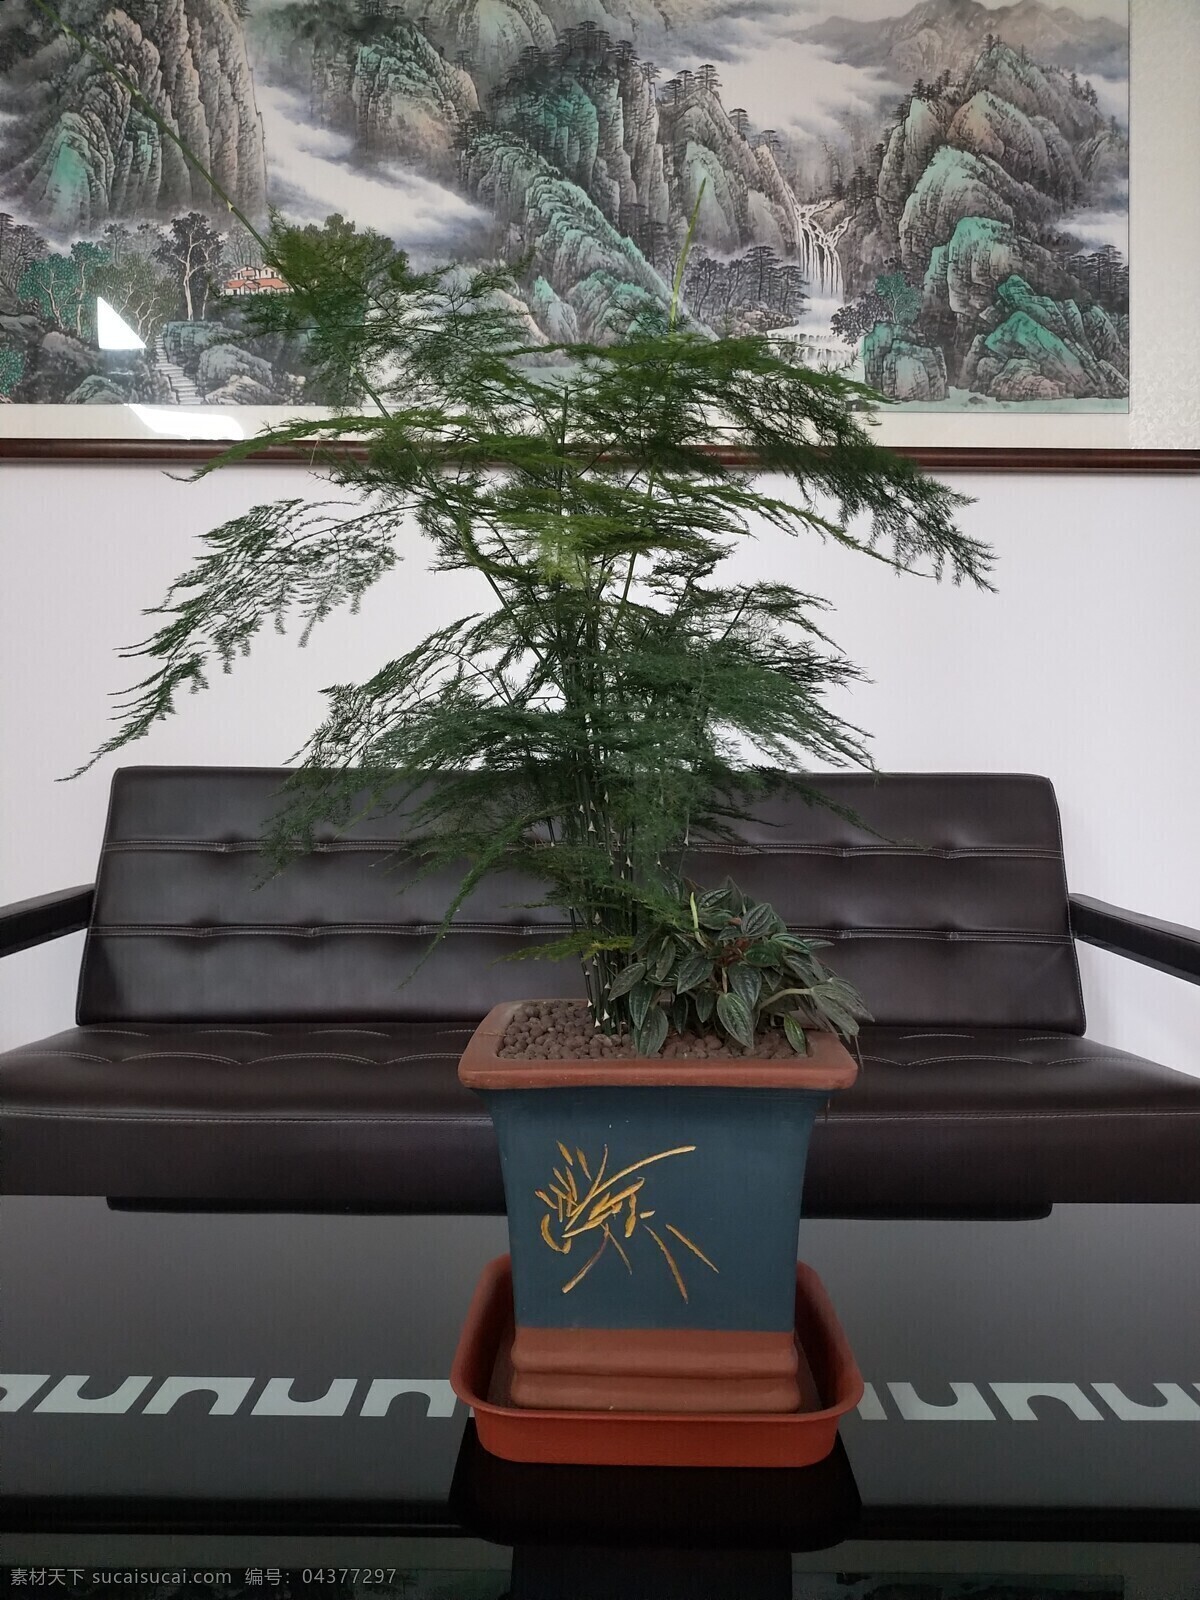 办公室文竹 办公室 文竹 花盆 植物 文化 自然景观 山水风景